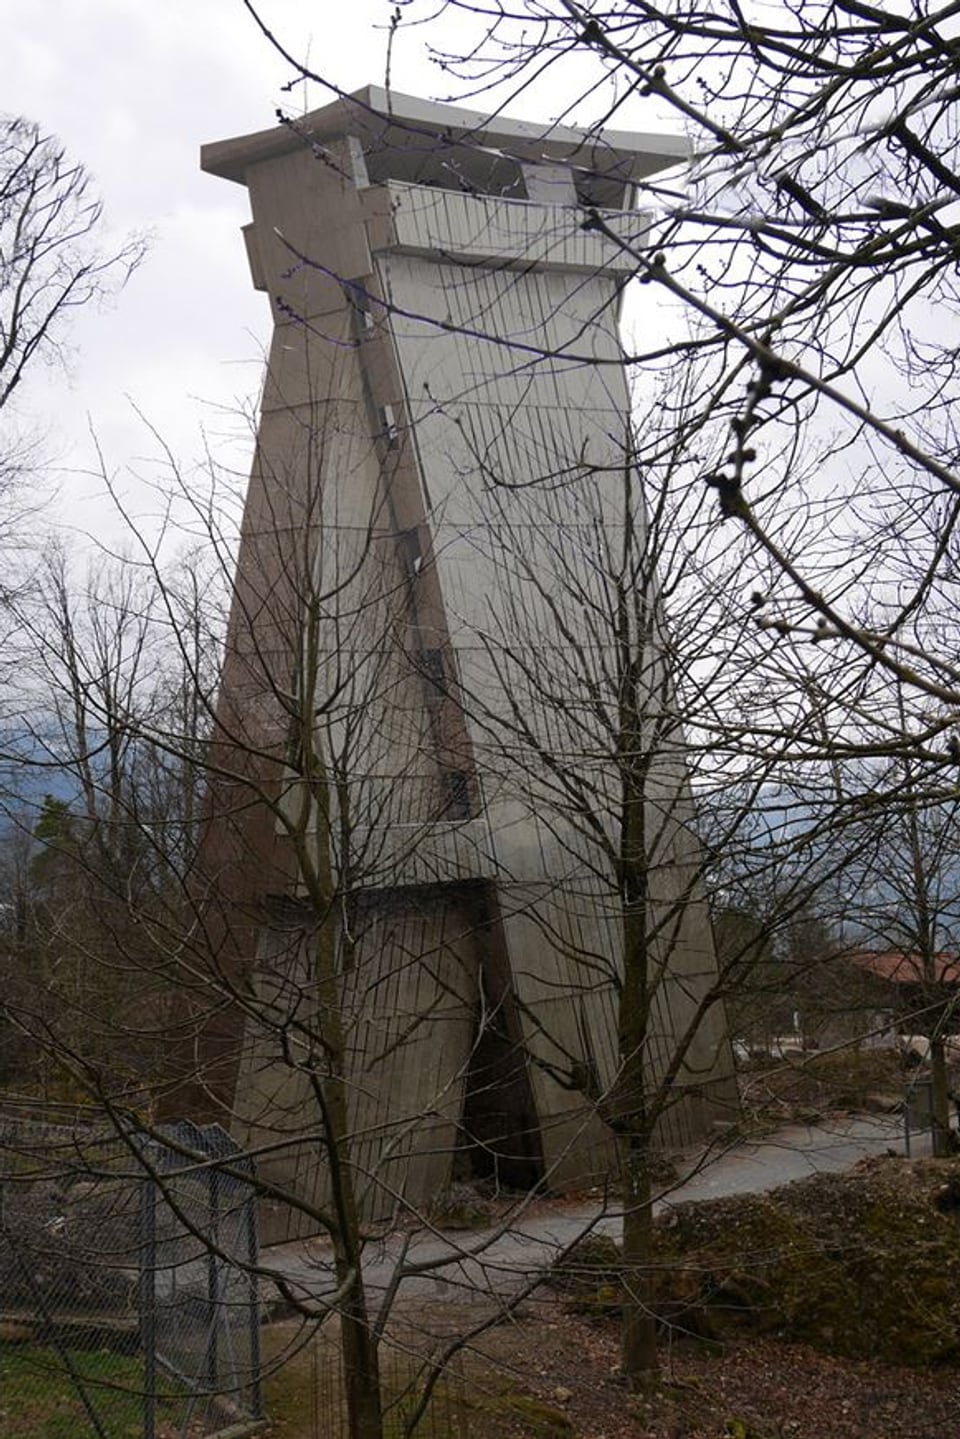 Holzturm in einem Park.